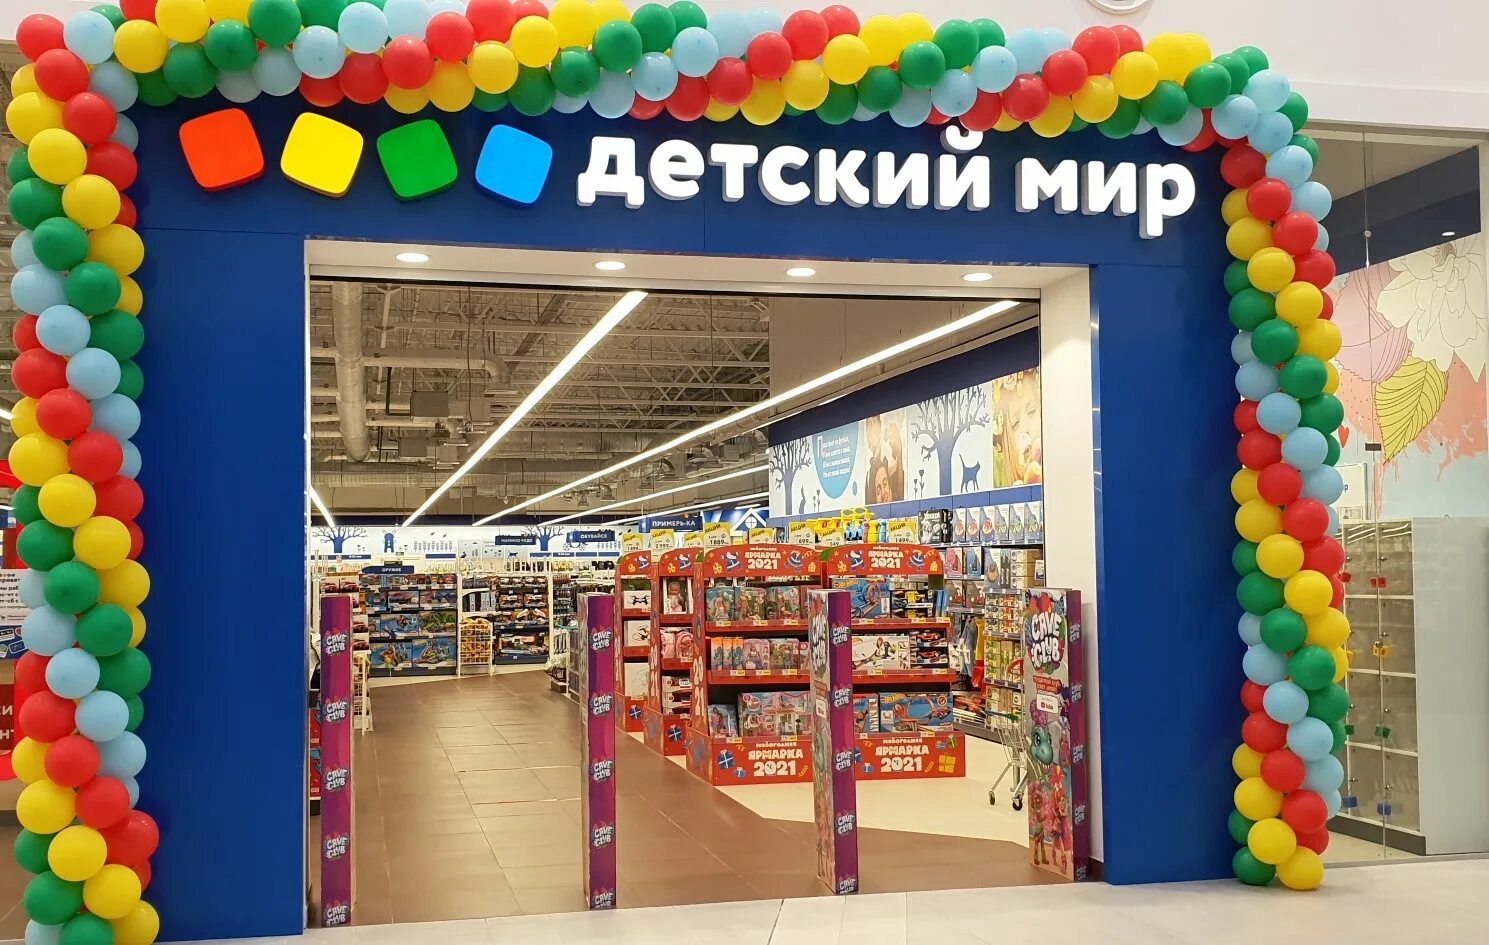 Мир магазин россия. Детский мир магазин. Детский мир новые магазины. Реклама магазина детский мир.